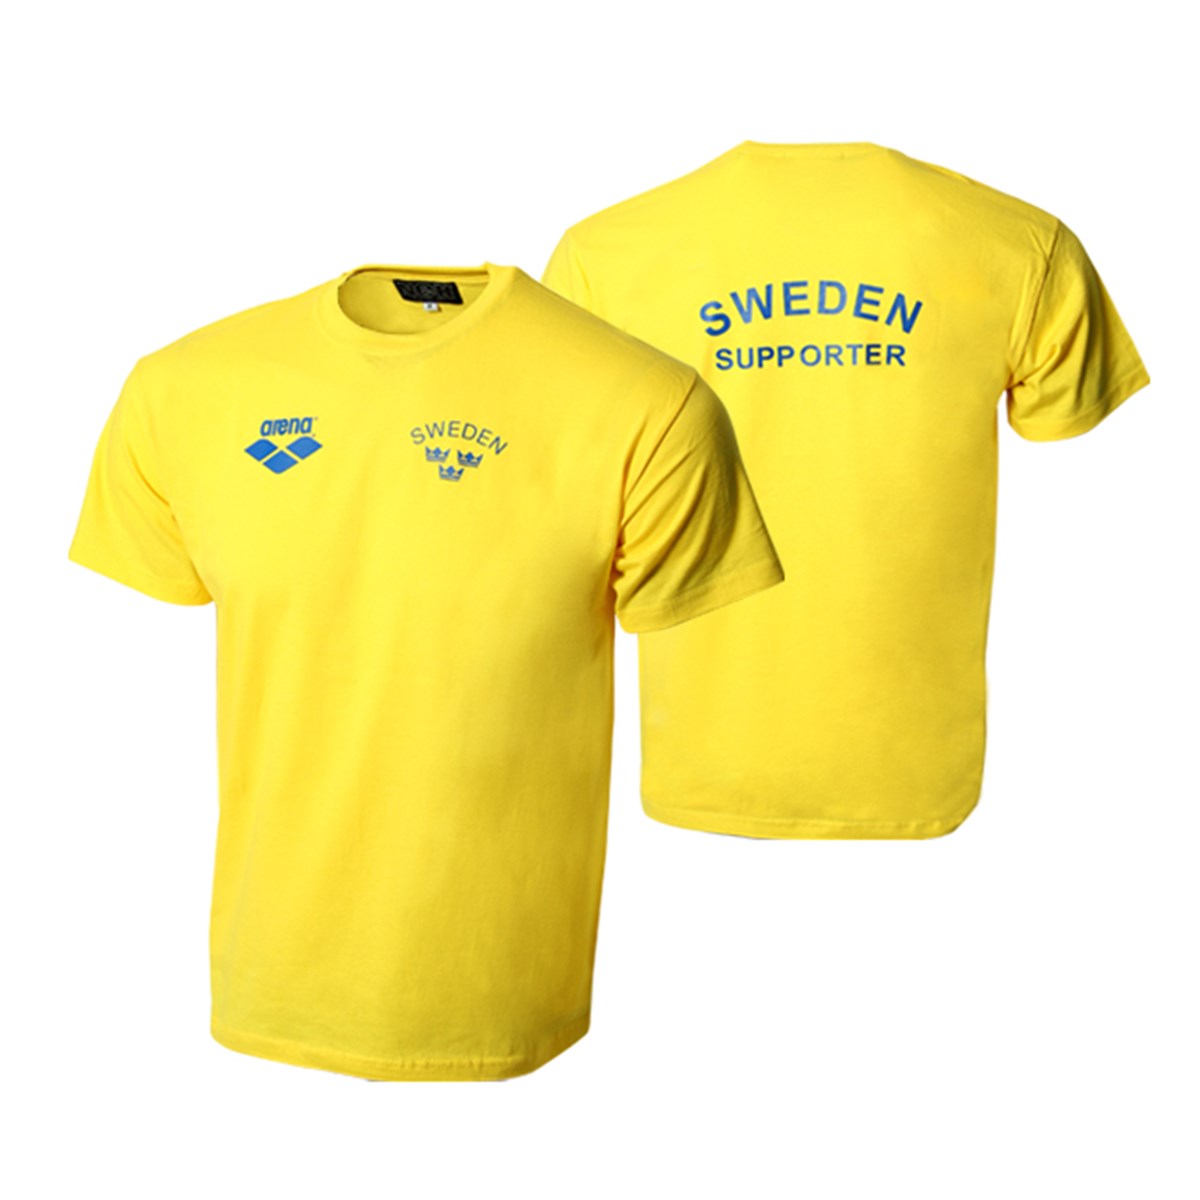 T-shirt 1 "Sverige"